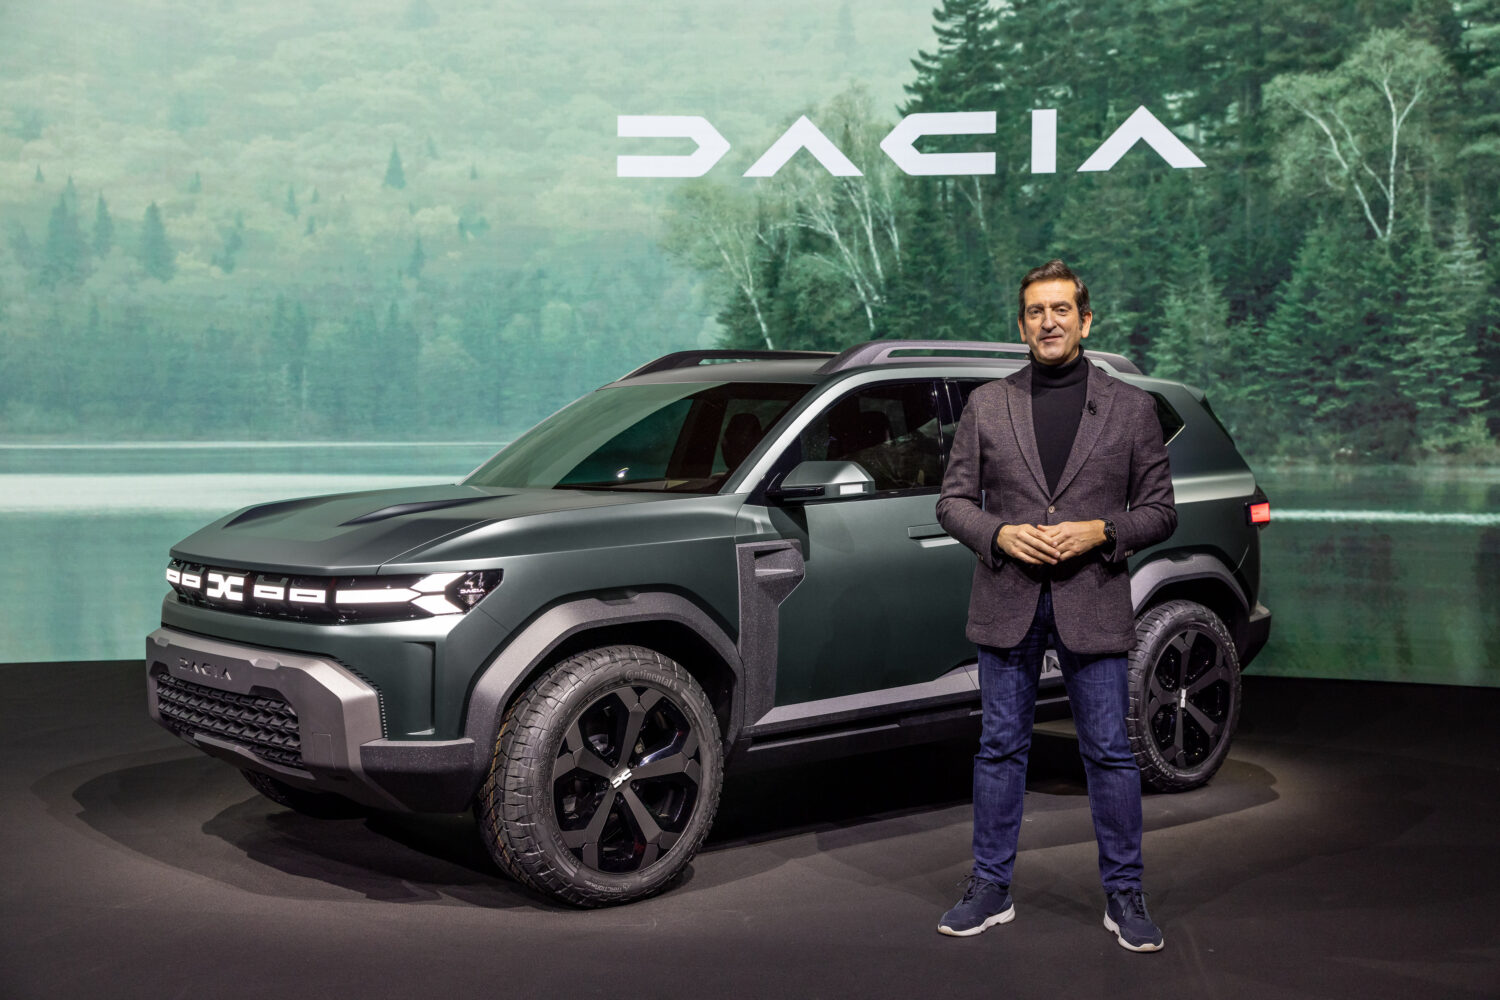 2021 - Dacia Bigster Concept and Alejandro MESONERO-ROMANOS, designer